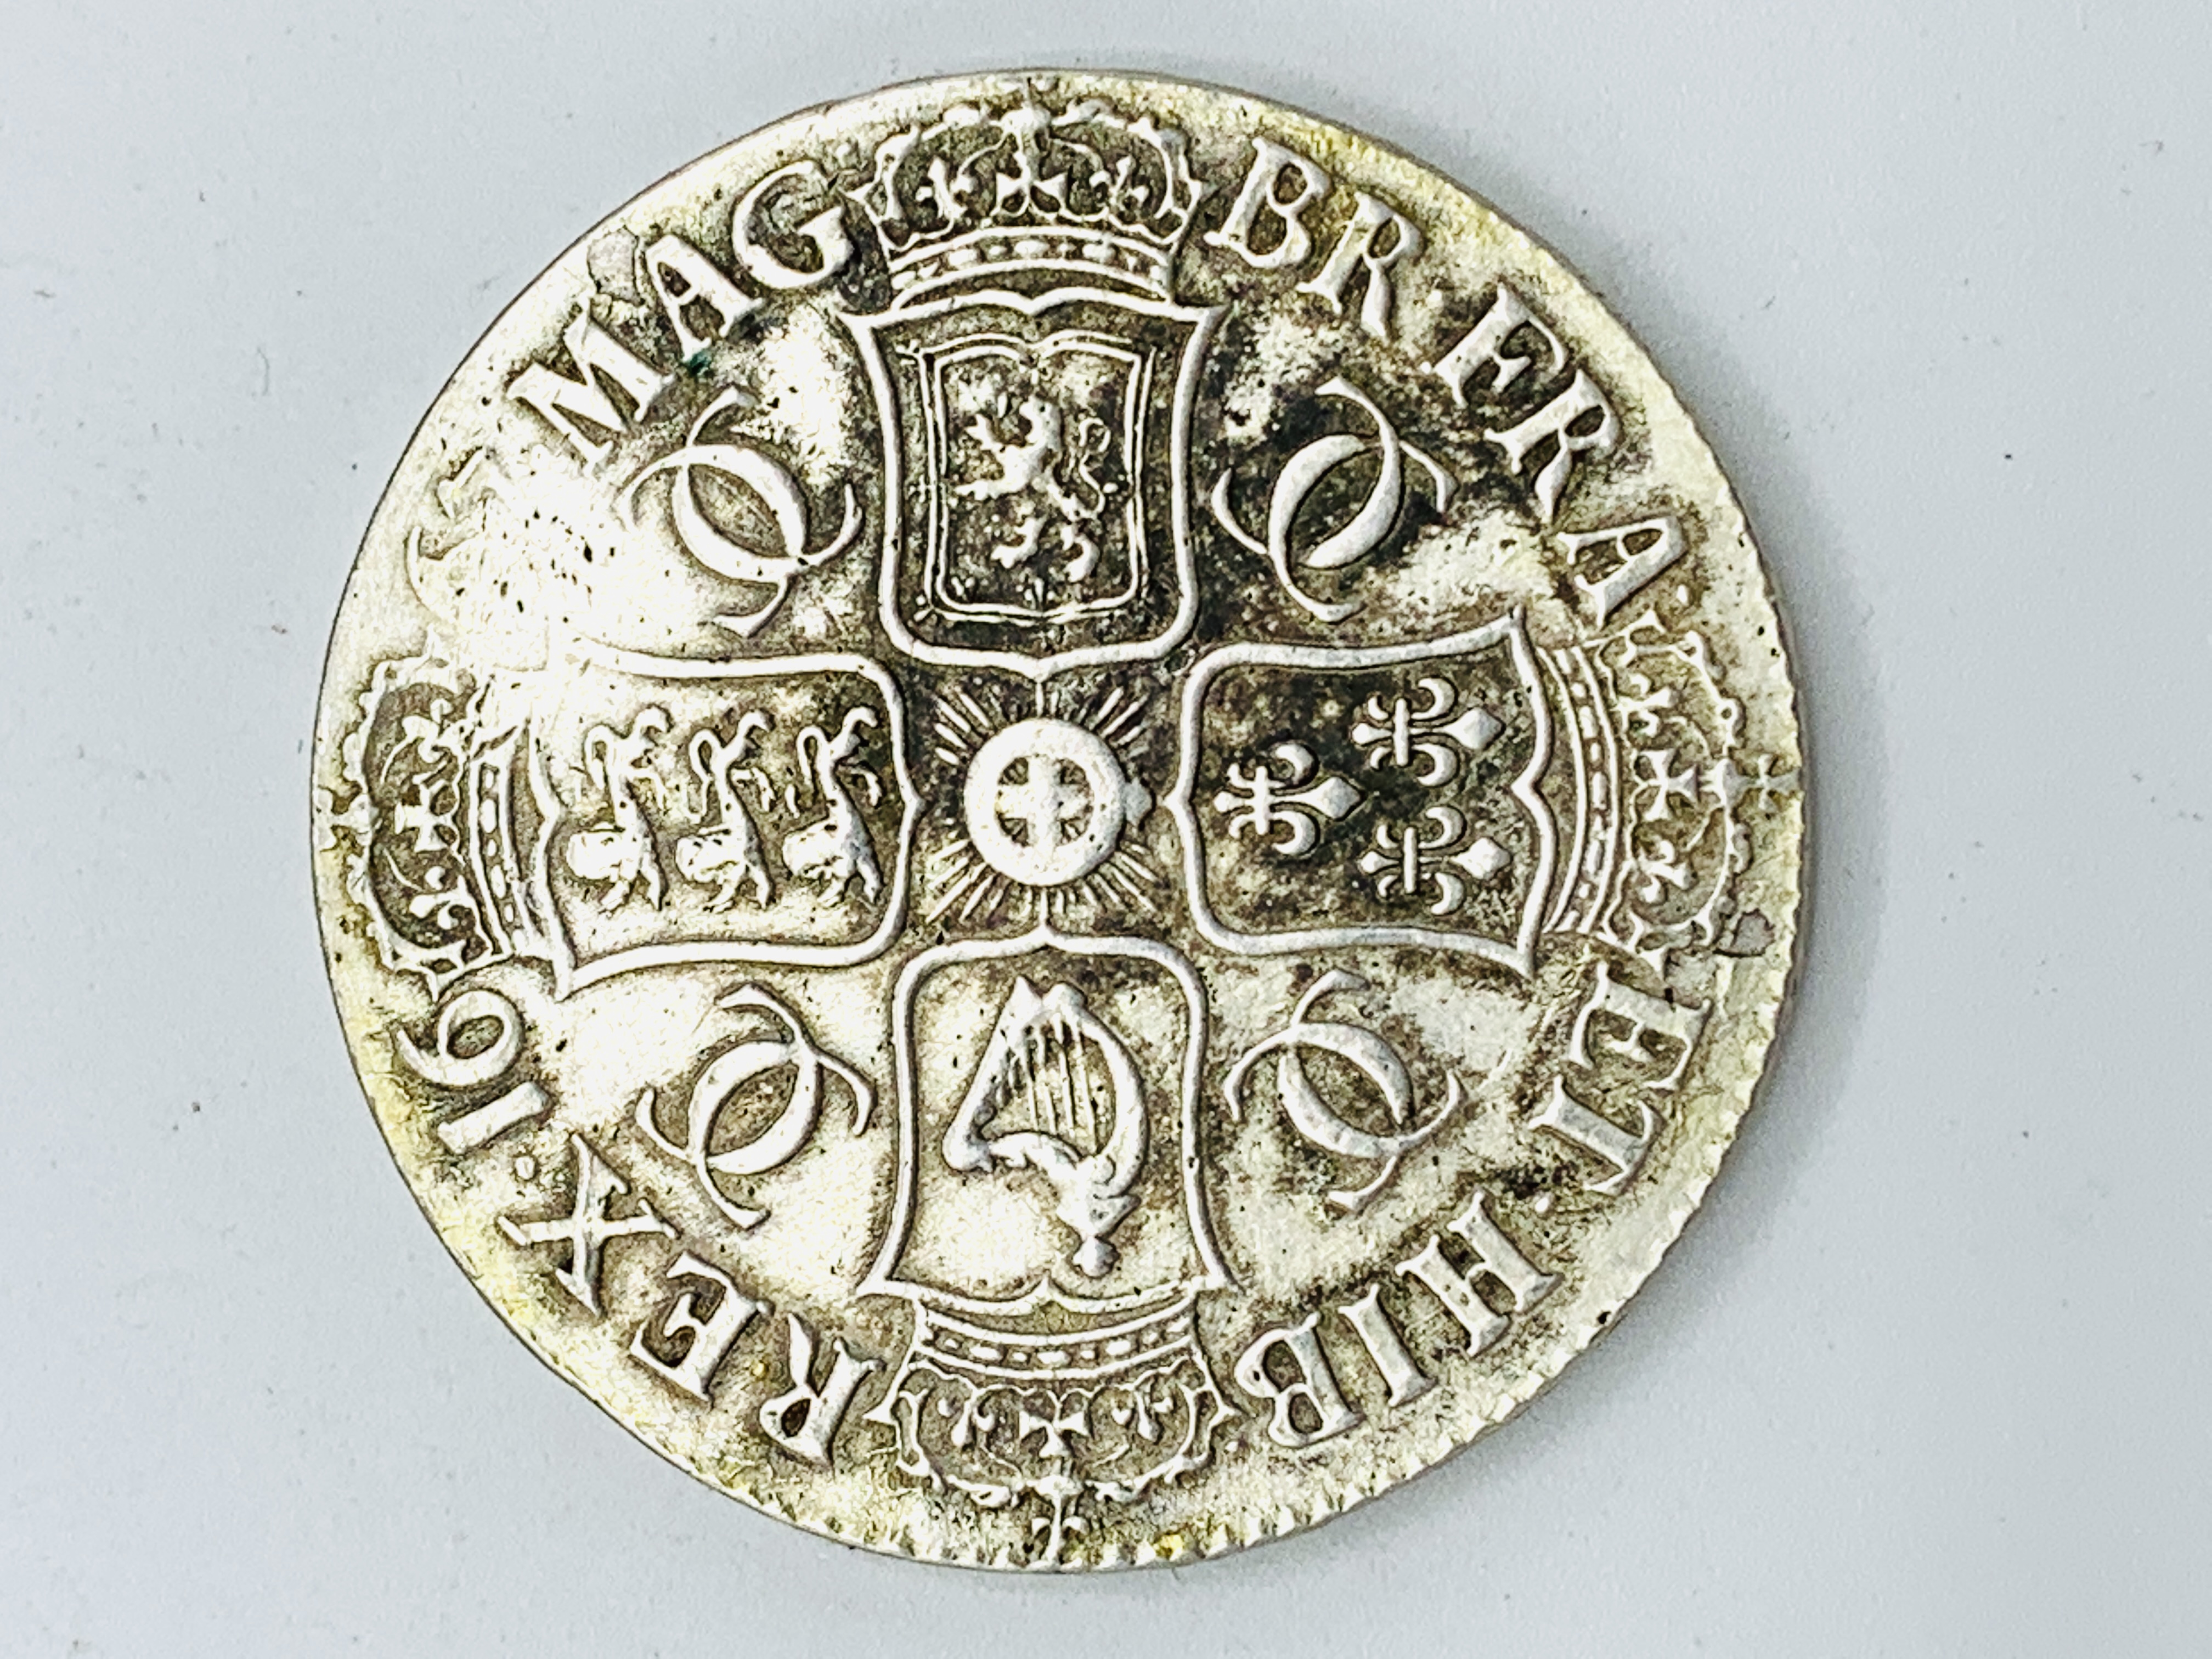 Charles II silver crown 1667 - Image 2 of 3